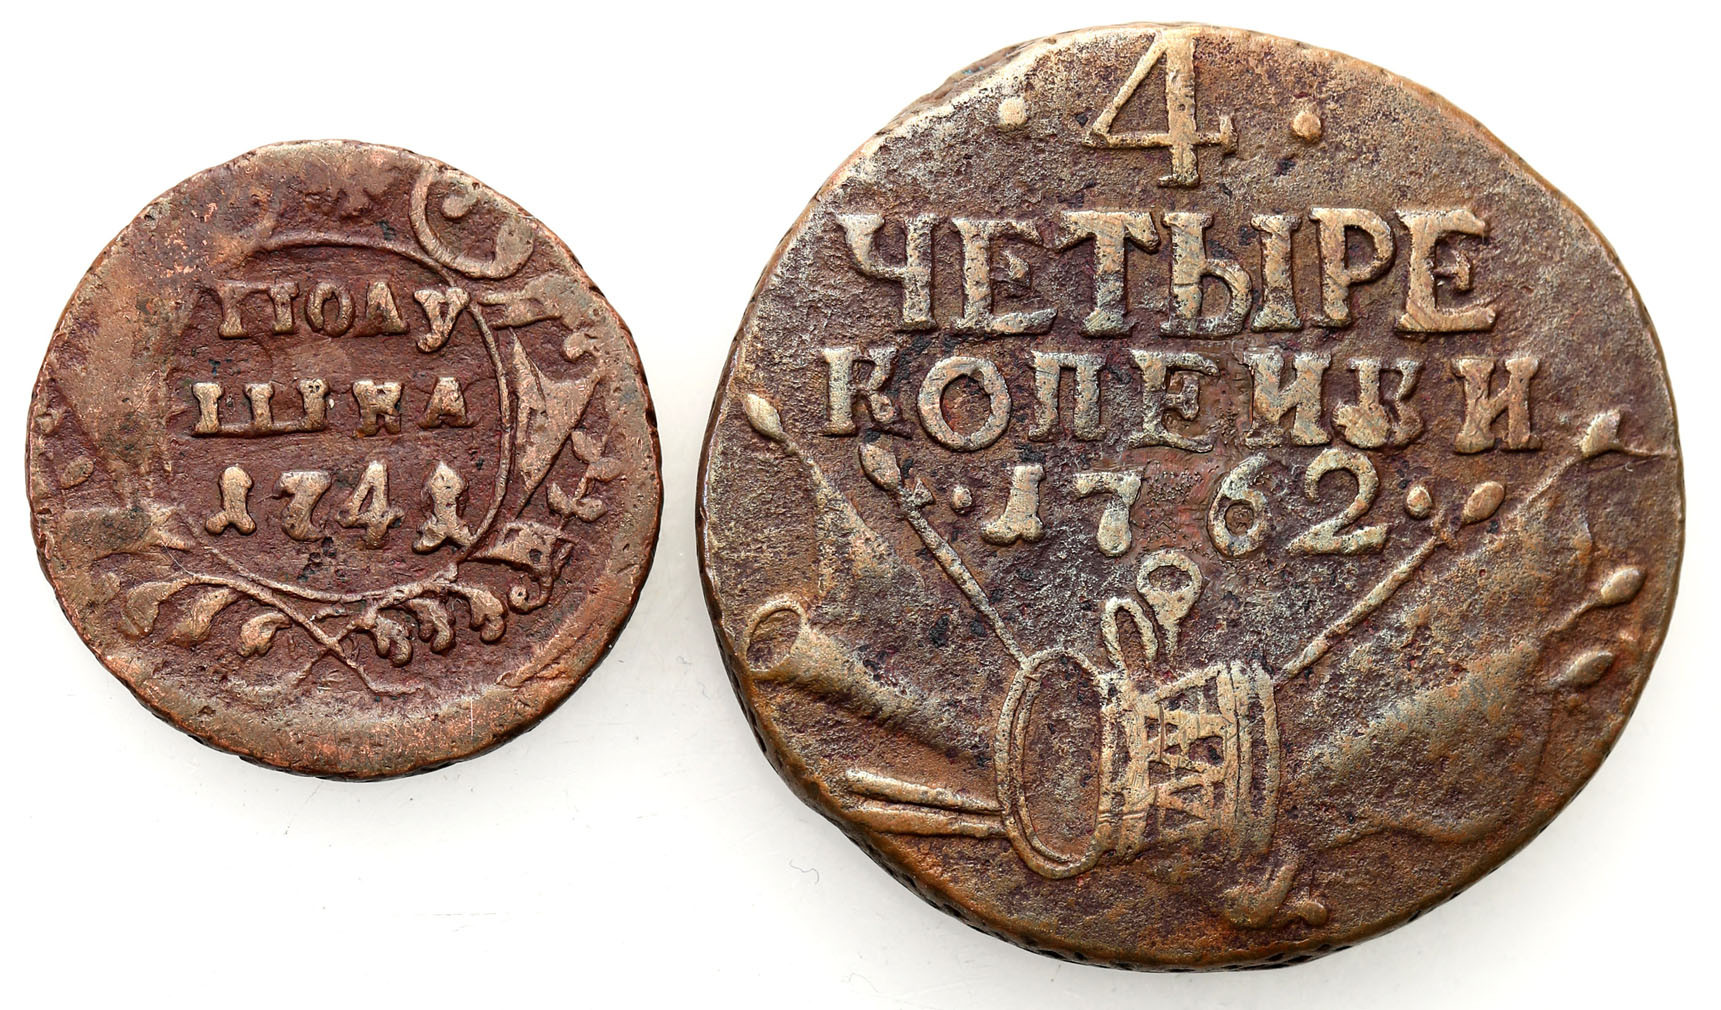 Rosja. Iwan VI. Połuszka 1741 / Piotr III. 4 kopiejki 1762 - zestaw 2 monet